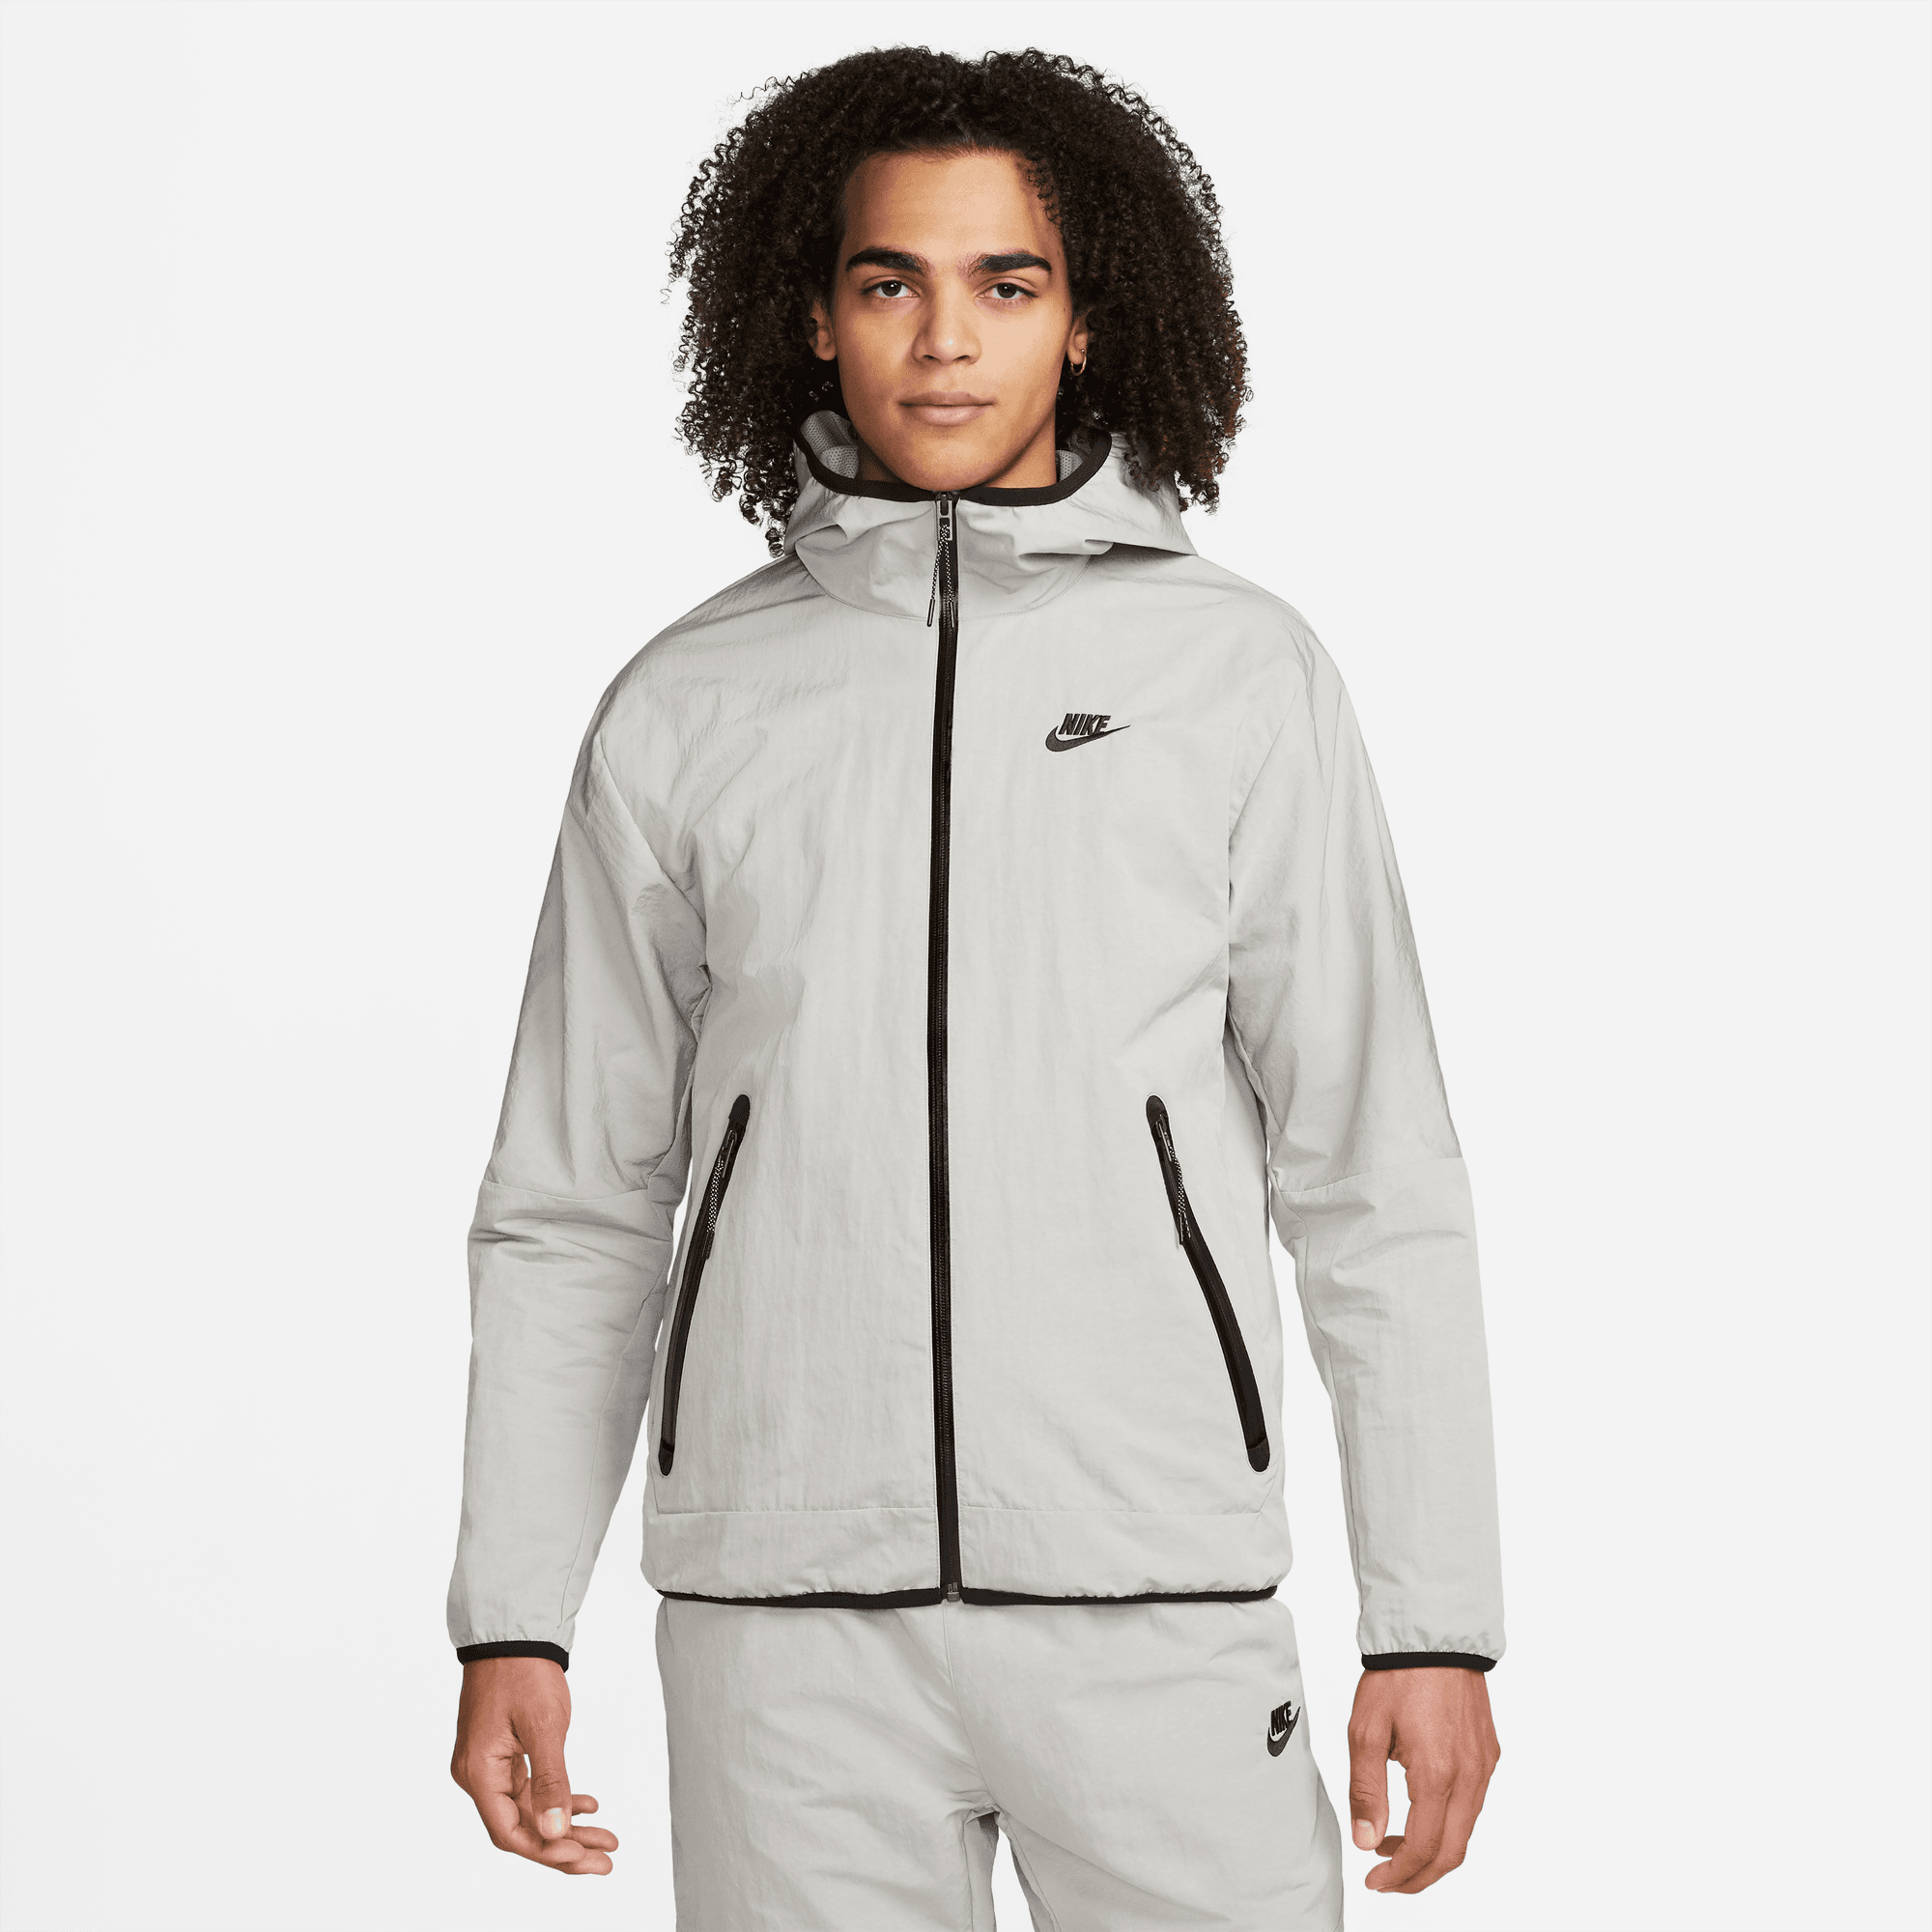 Verwijdering alias Parelachtig Nike Sportswear Tech Woven Men's Full-Zip Lined Hooded Jacket - SoleFly